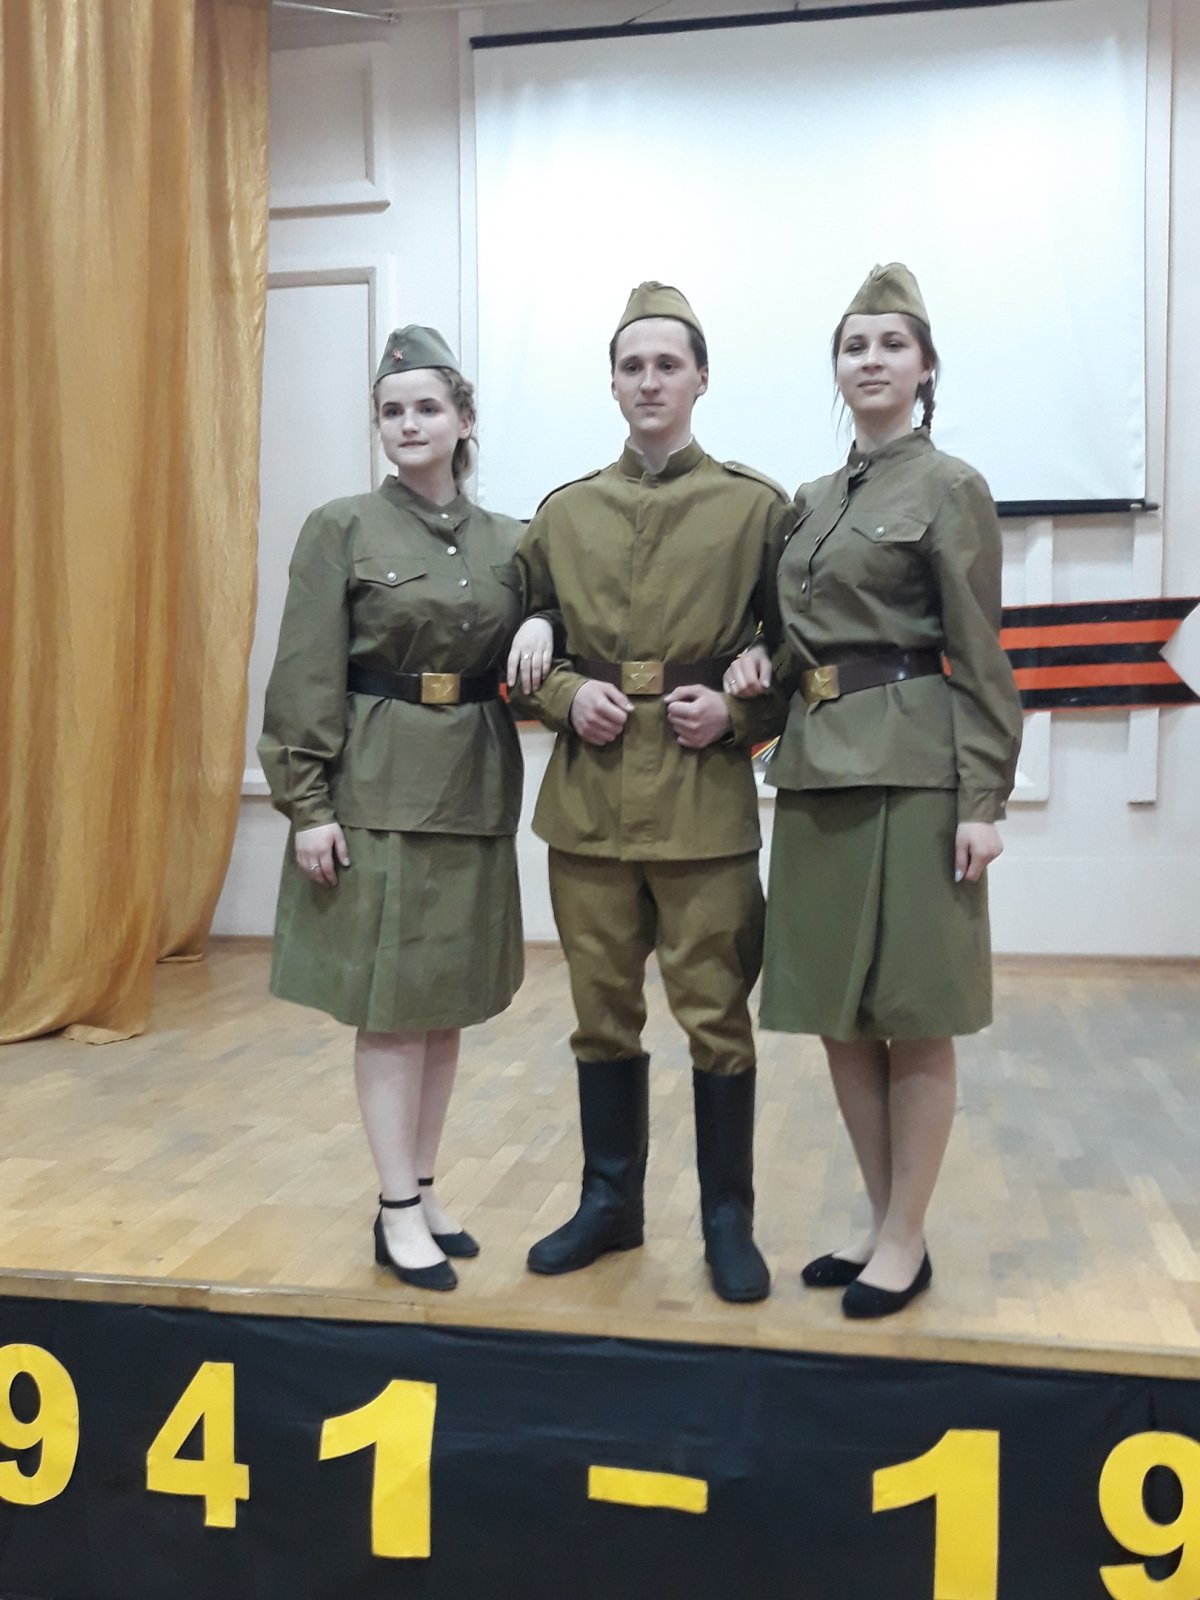 8 мая студенты и сотрудники Самарского филиала Финуниверситета собрались в актовом зале, чтобы отметить общий праздник радости и гордости за Великую Победу братских народов Советского Союза над фашистской Германией.